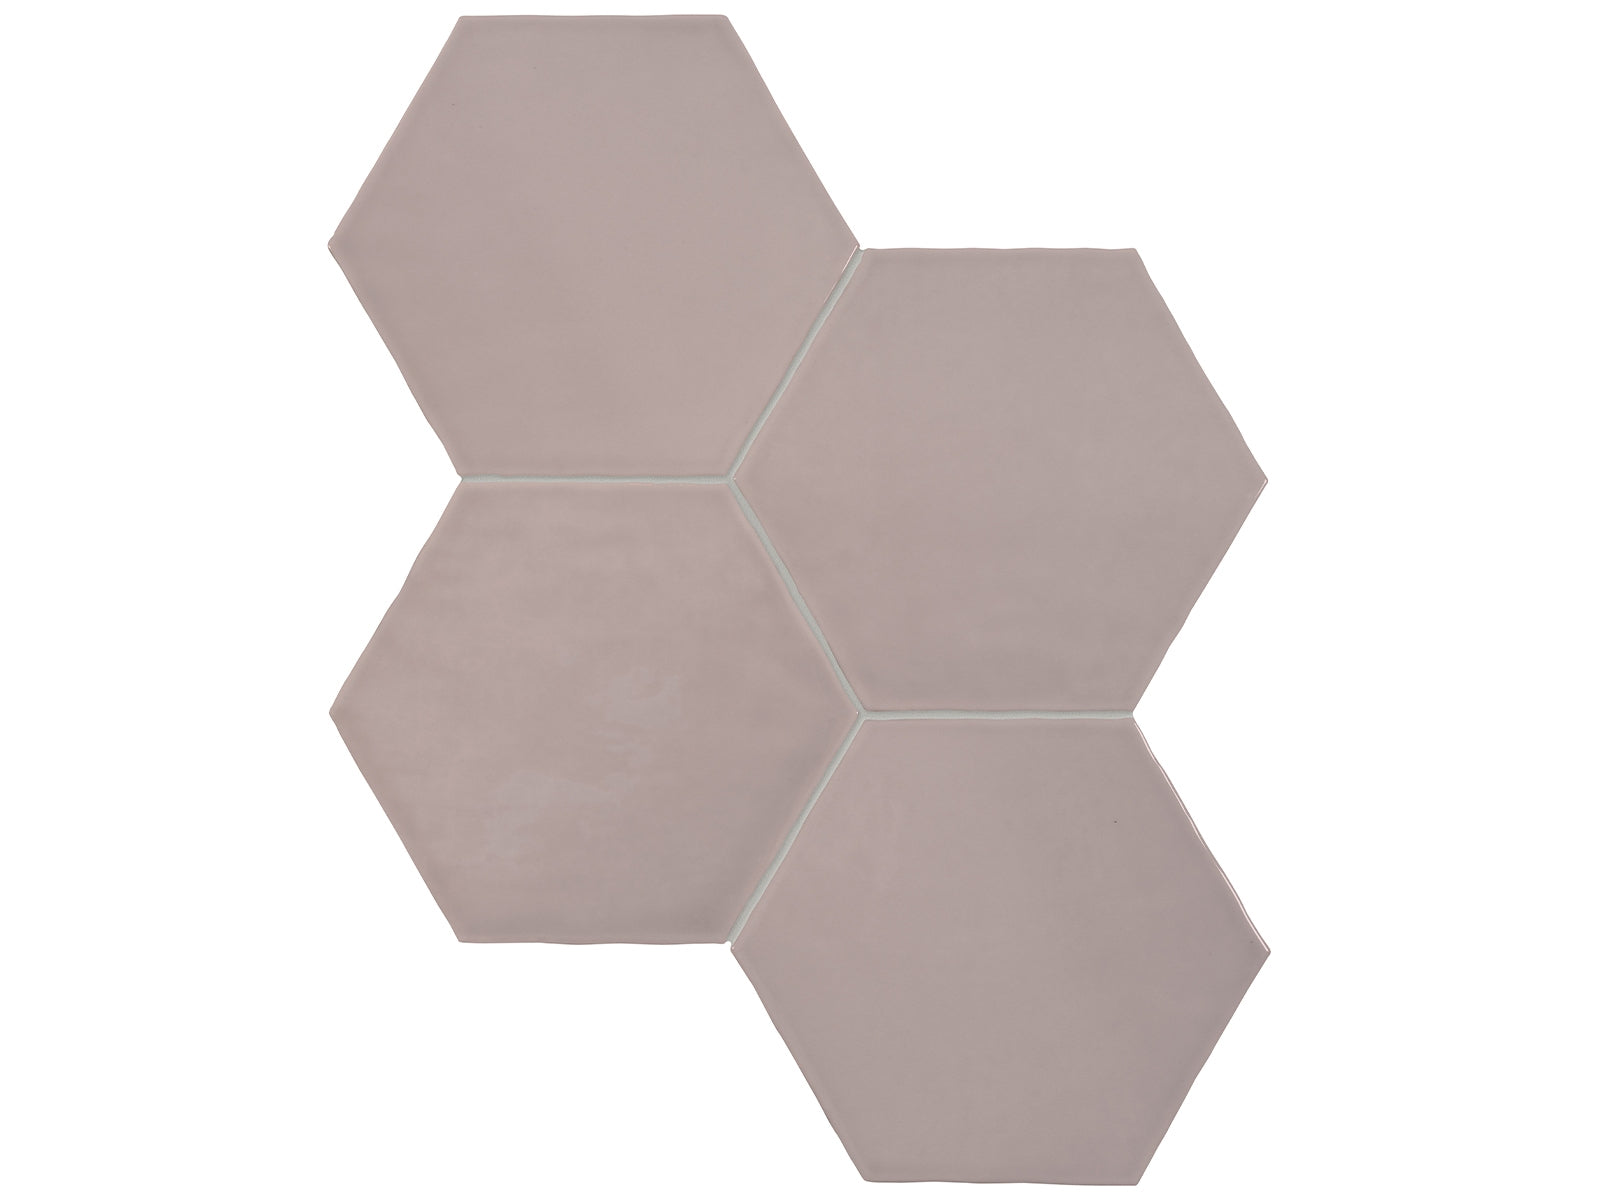 6 in Teramoda Petal Hexagon Glossy Pressed Glazed Ceramic Tile